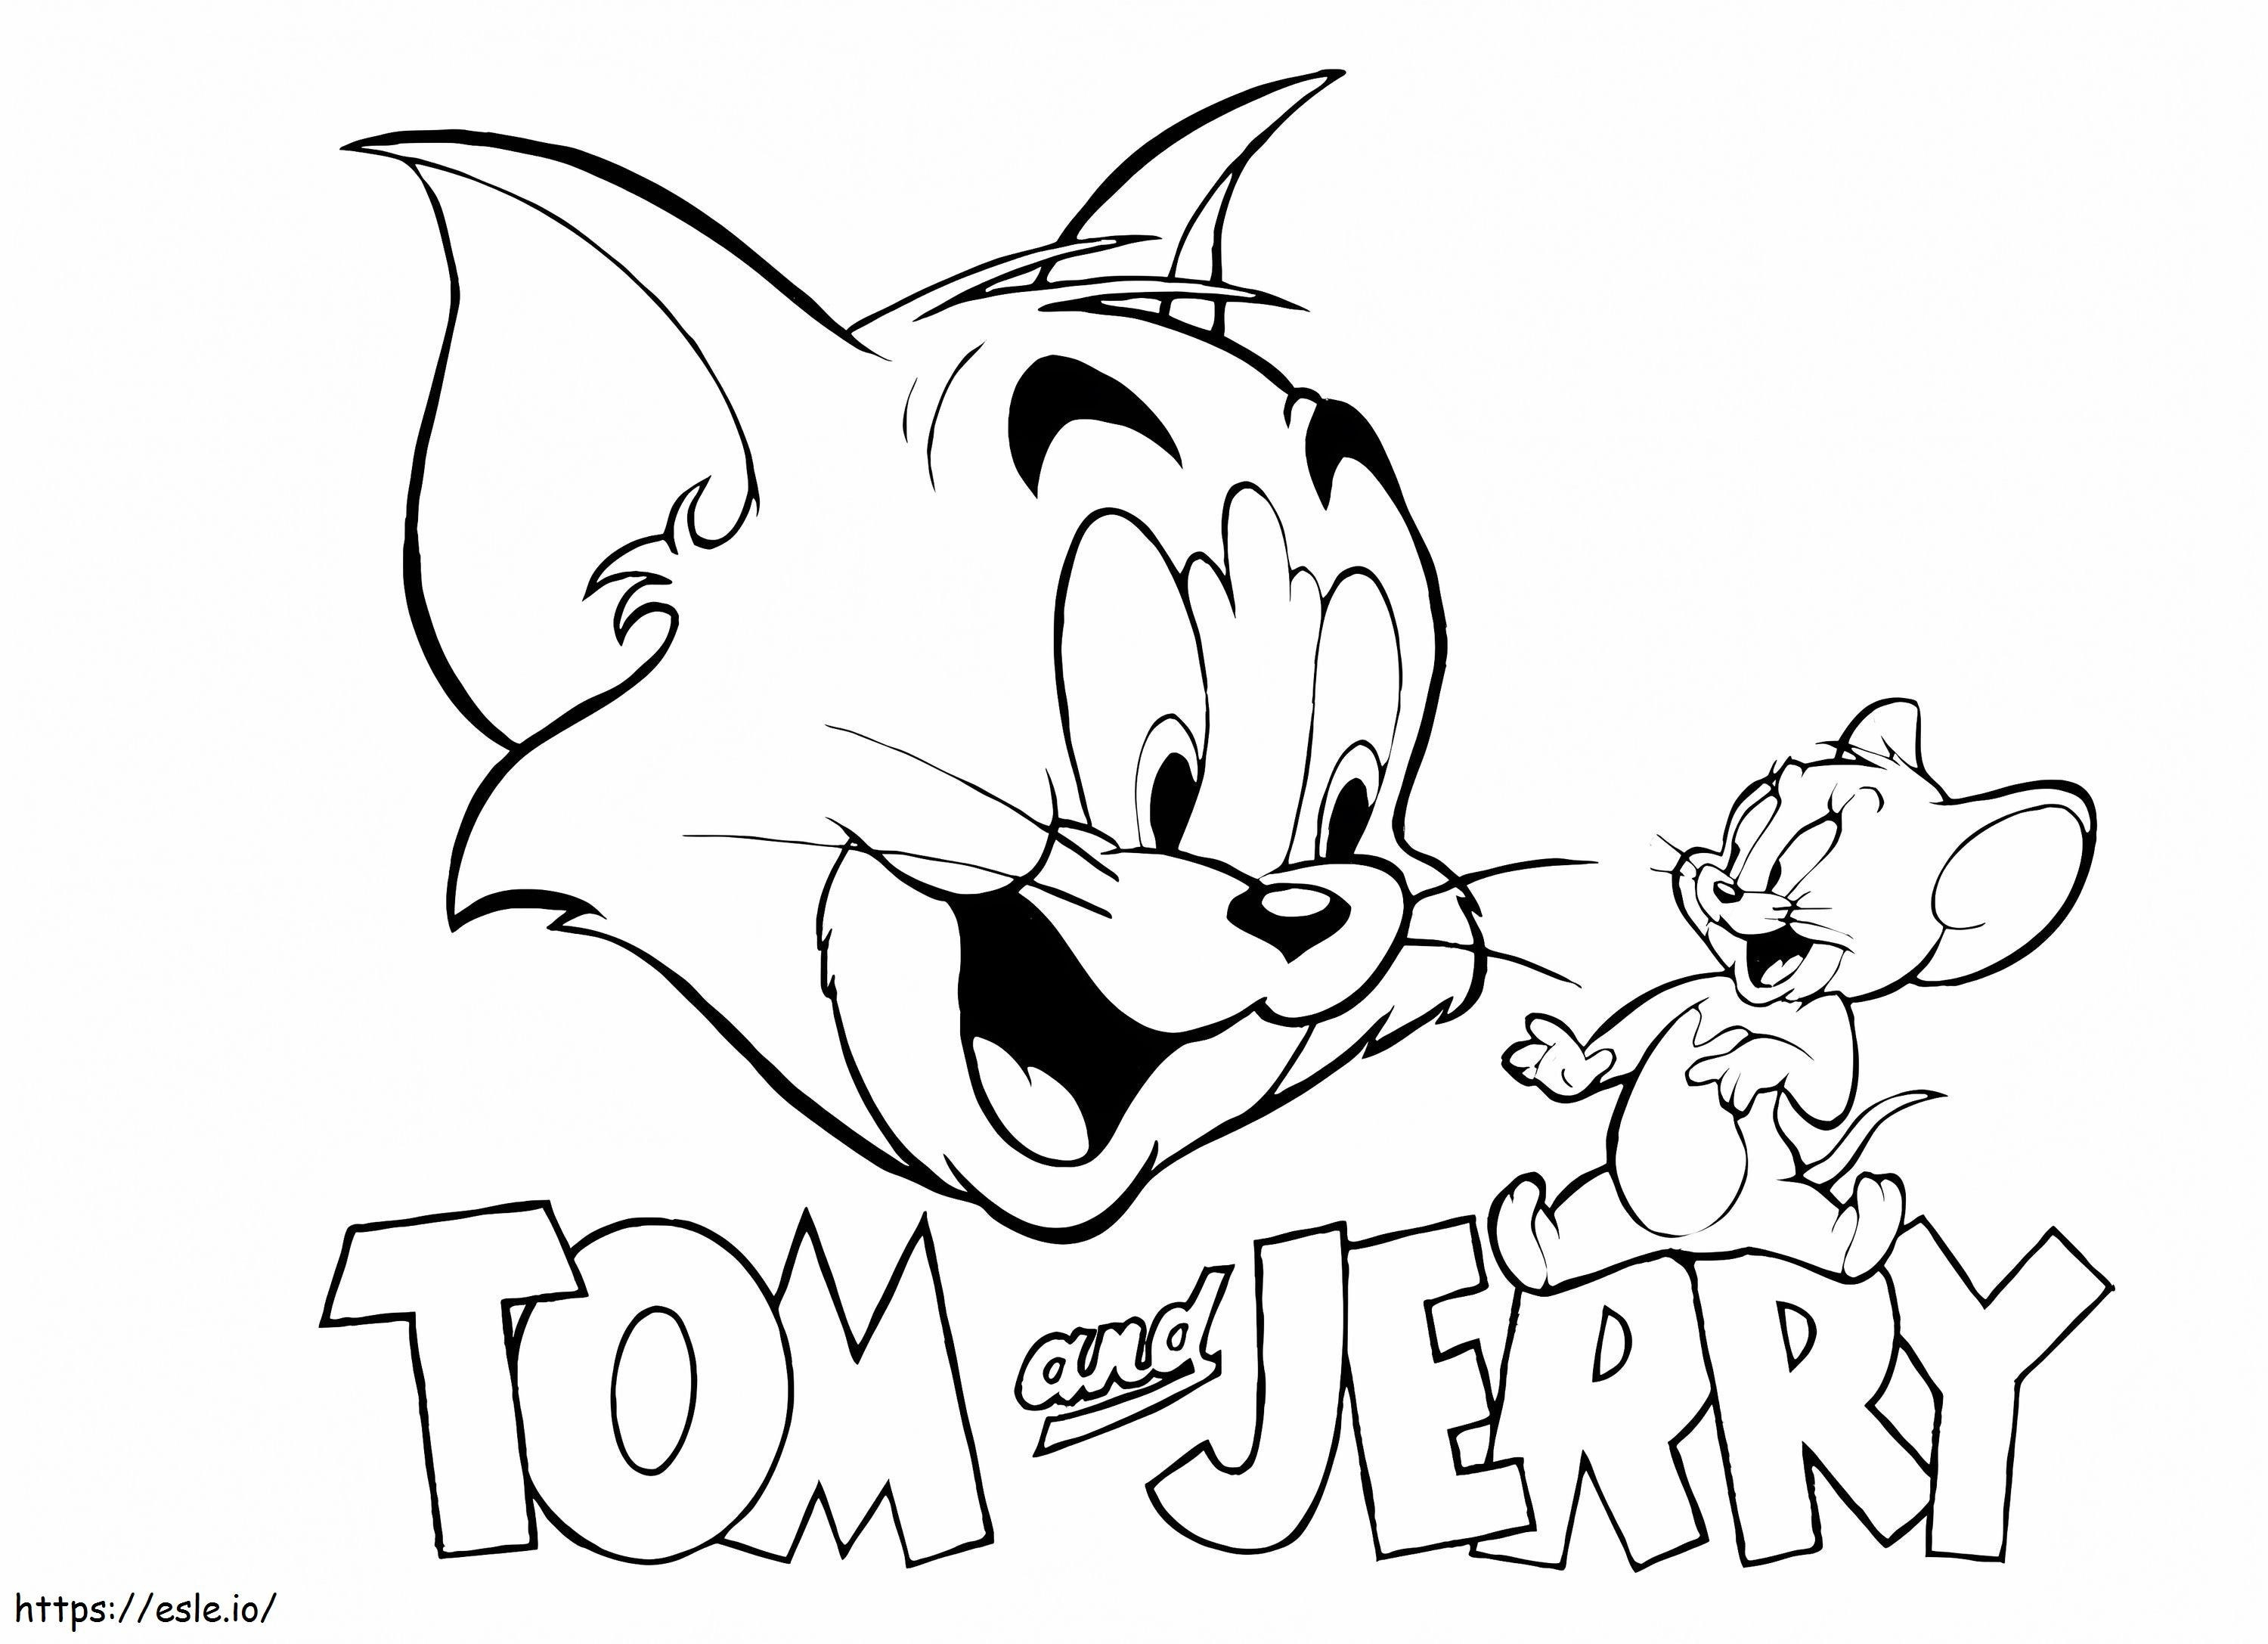  tom y jerry adorable tom y jerry pulgar arriba tom y jerry de tom y jerry para colorear